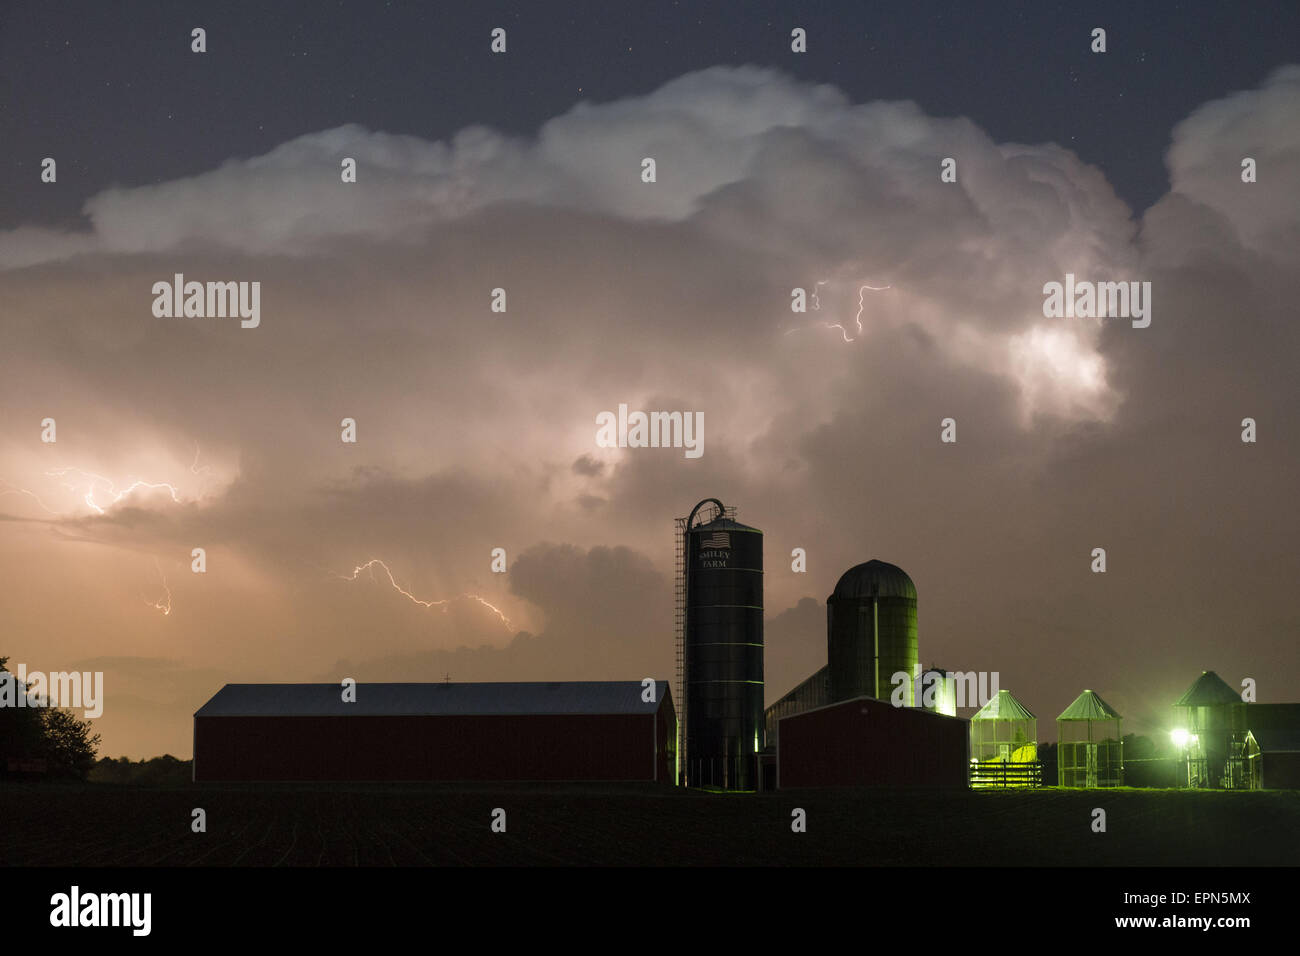 Ville de Wallkill, N.Y, USA. 19 mai, 2015. Éclairs dans les nuages au-dessus de la grange et silos d'une ferme dans la ville de Wallkill, New York, au cours d'un orage de printemps. © Tom Bushey/ZUMA/Alamy Fil Live News Banque D'Images